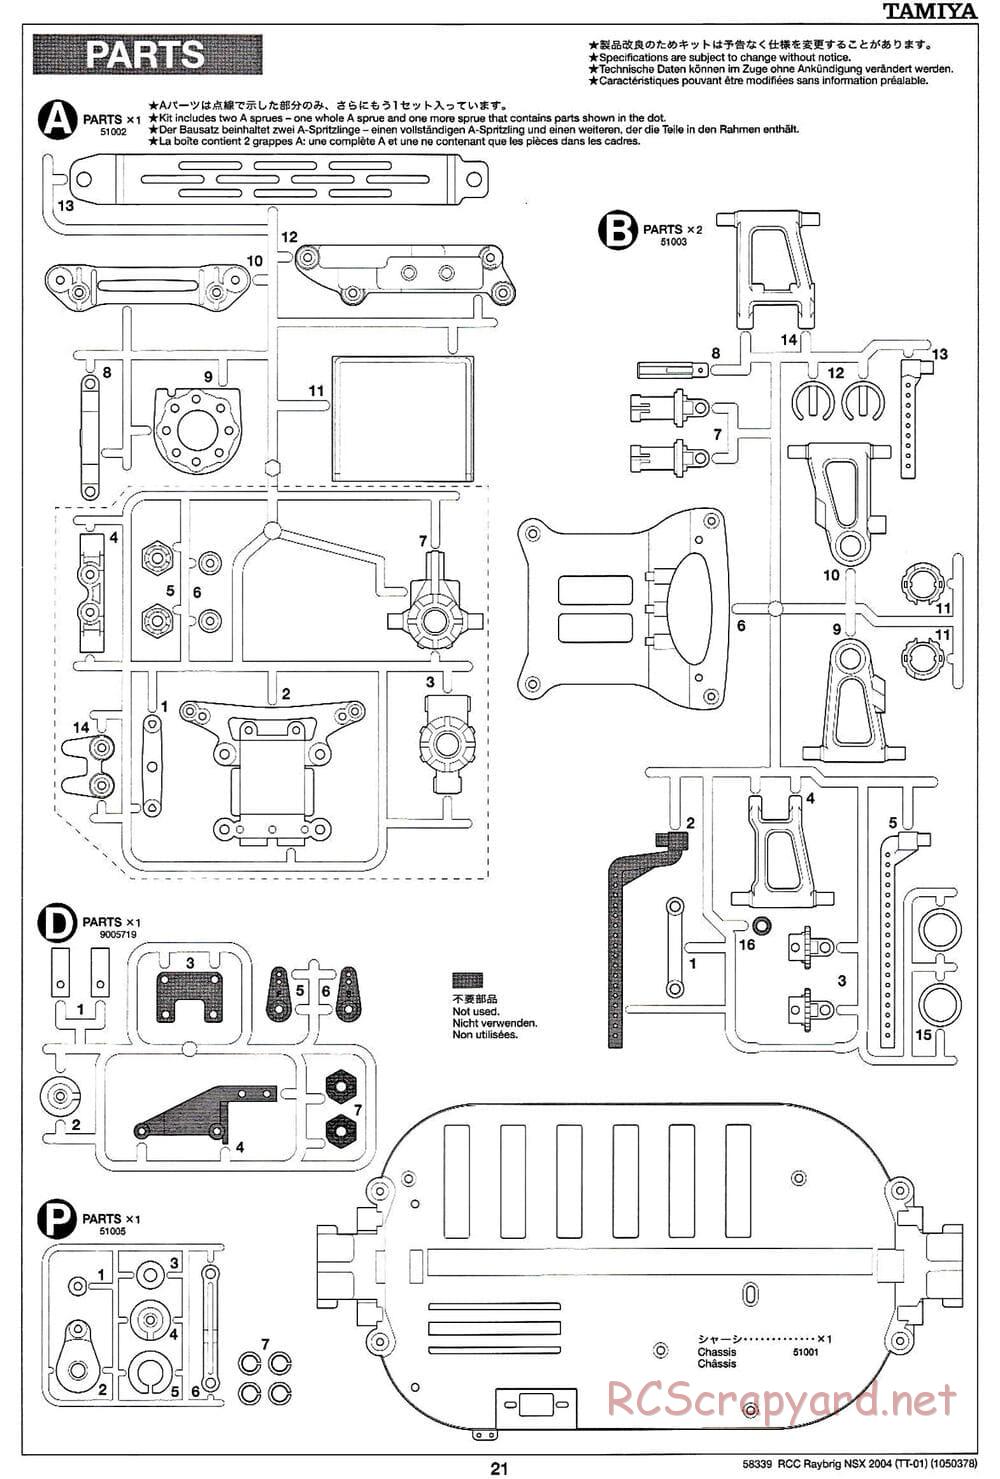 Tamiya - Raybrig NSX 2004 Chassis - Manual - Page 21